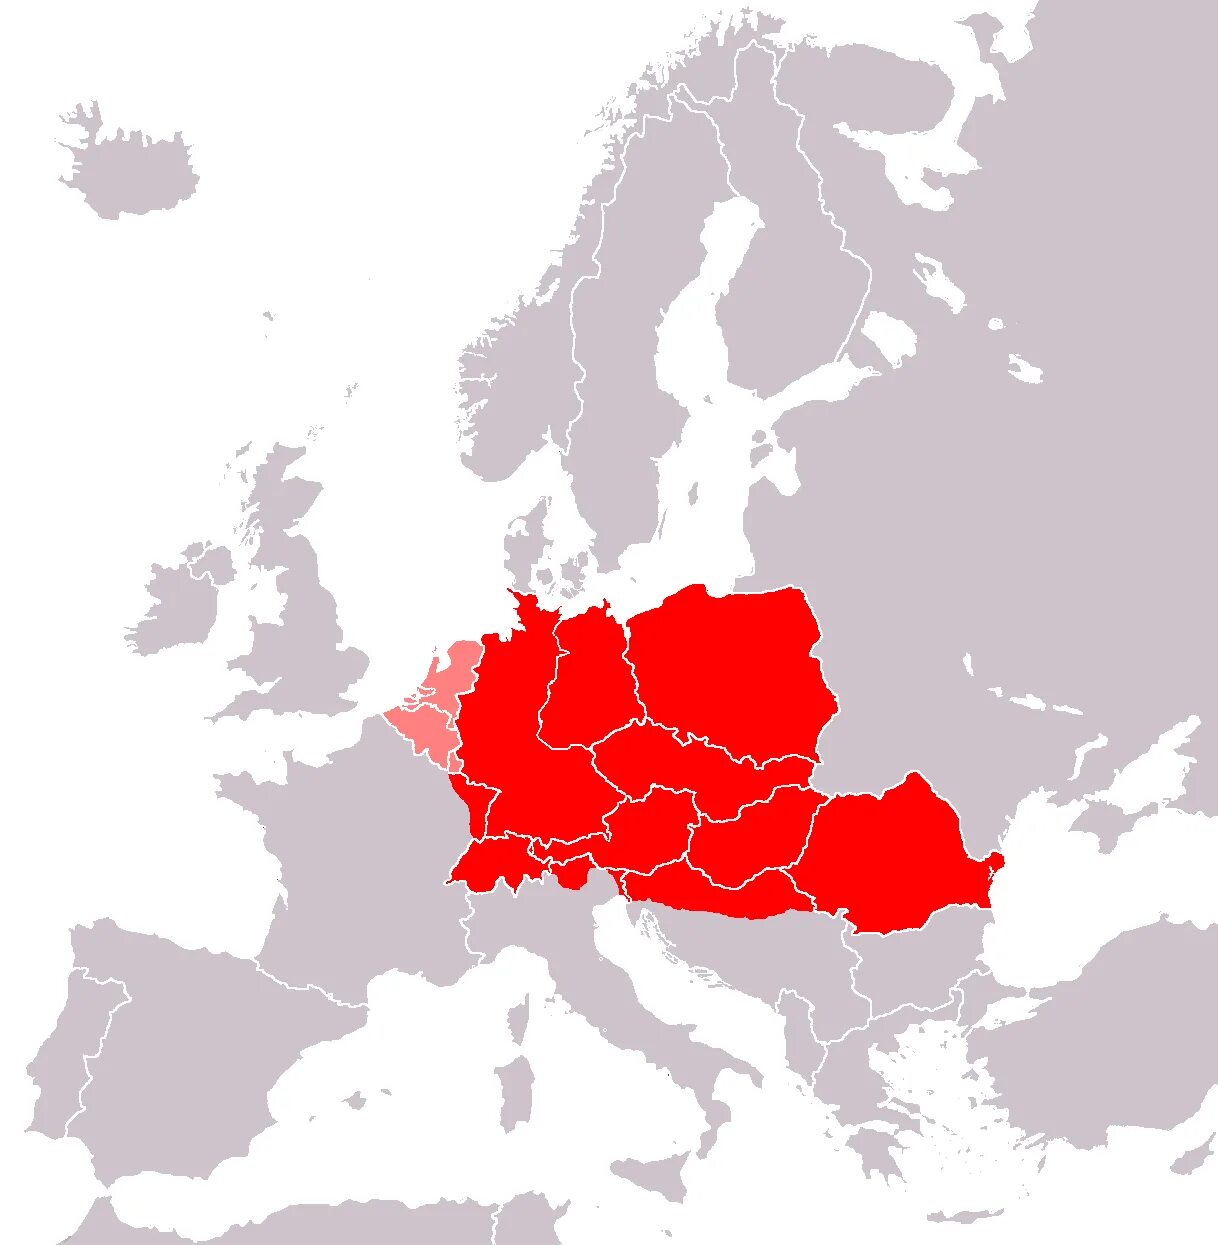 Центральный европеец. Центральная Европа. Страны центральной Европы. Регионы центральной Европы. Районы центральной Европы.